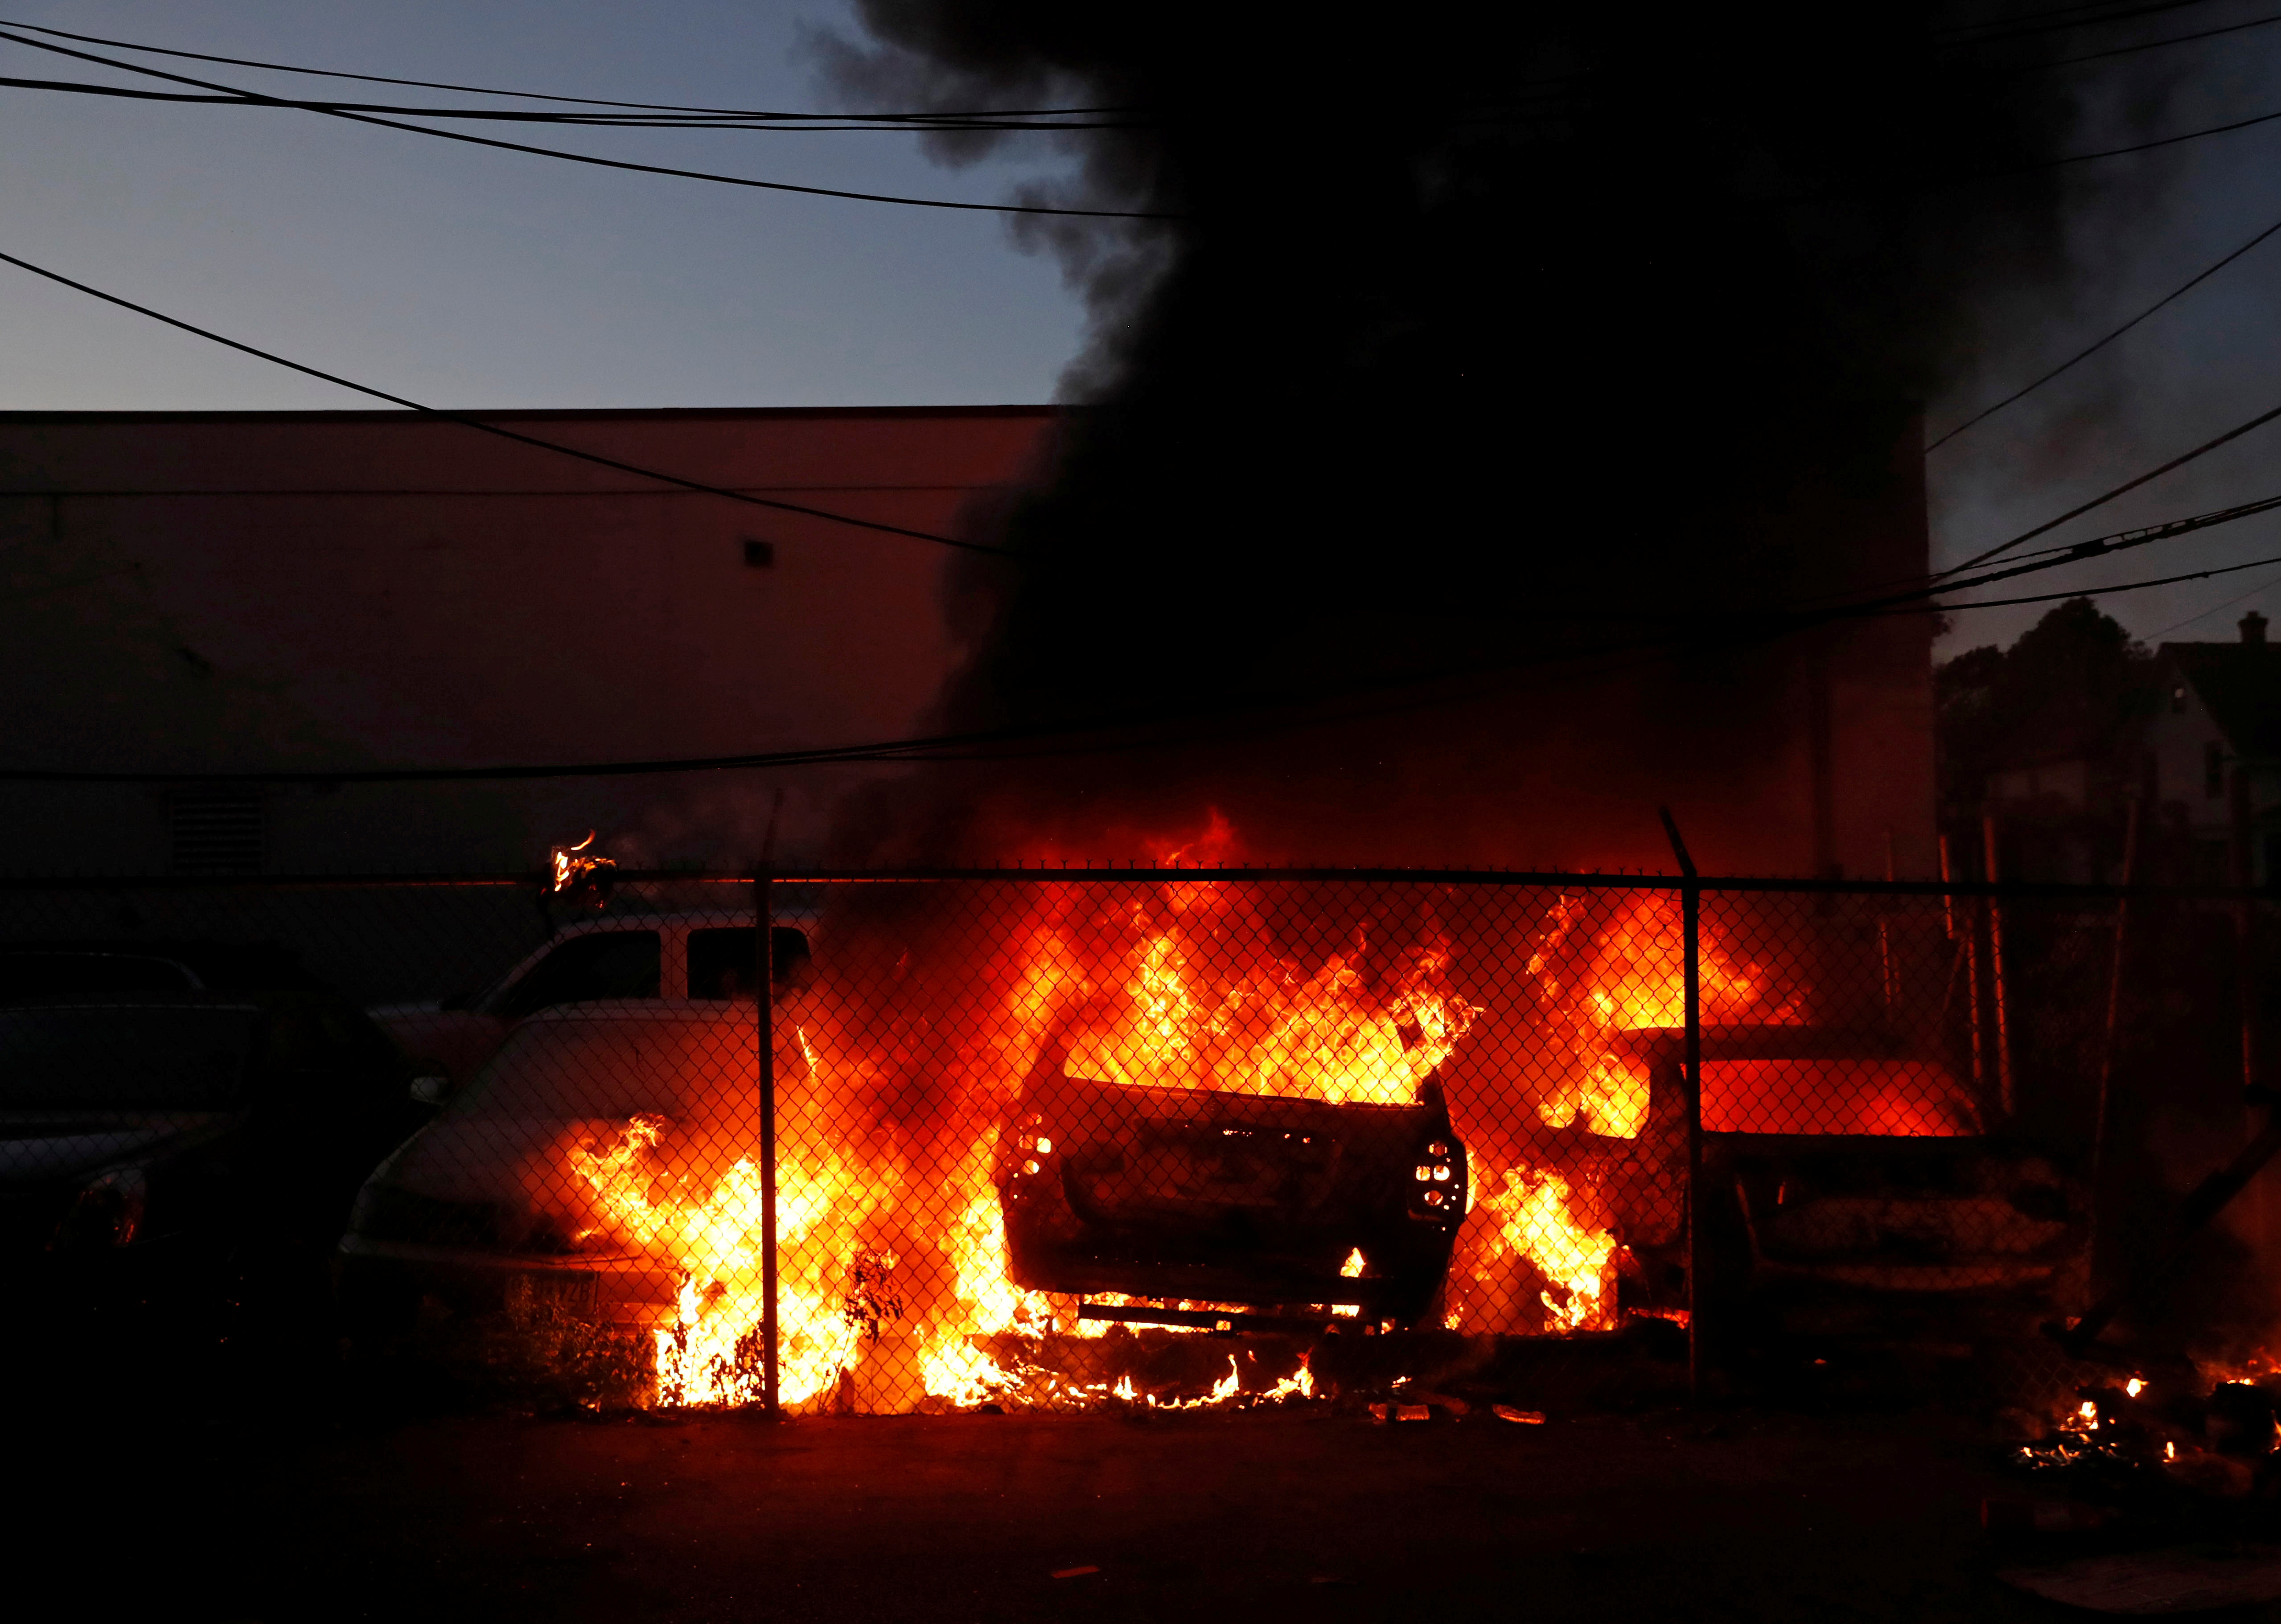 El incendio de automóviles y otros rodados ha sido una constante en las protestas que se desataron esta semana en Minneapolis y luego se extendieron a todo el país (REUTERS/Lucas Jackson)